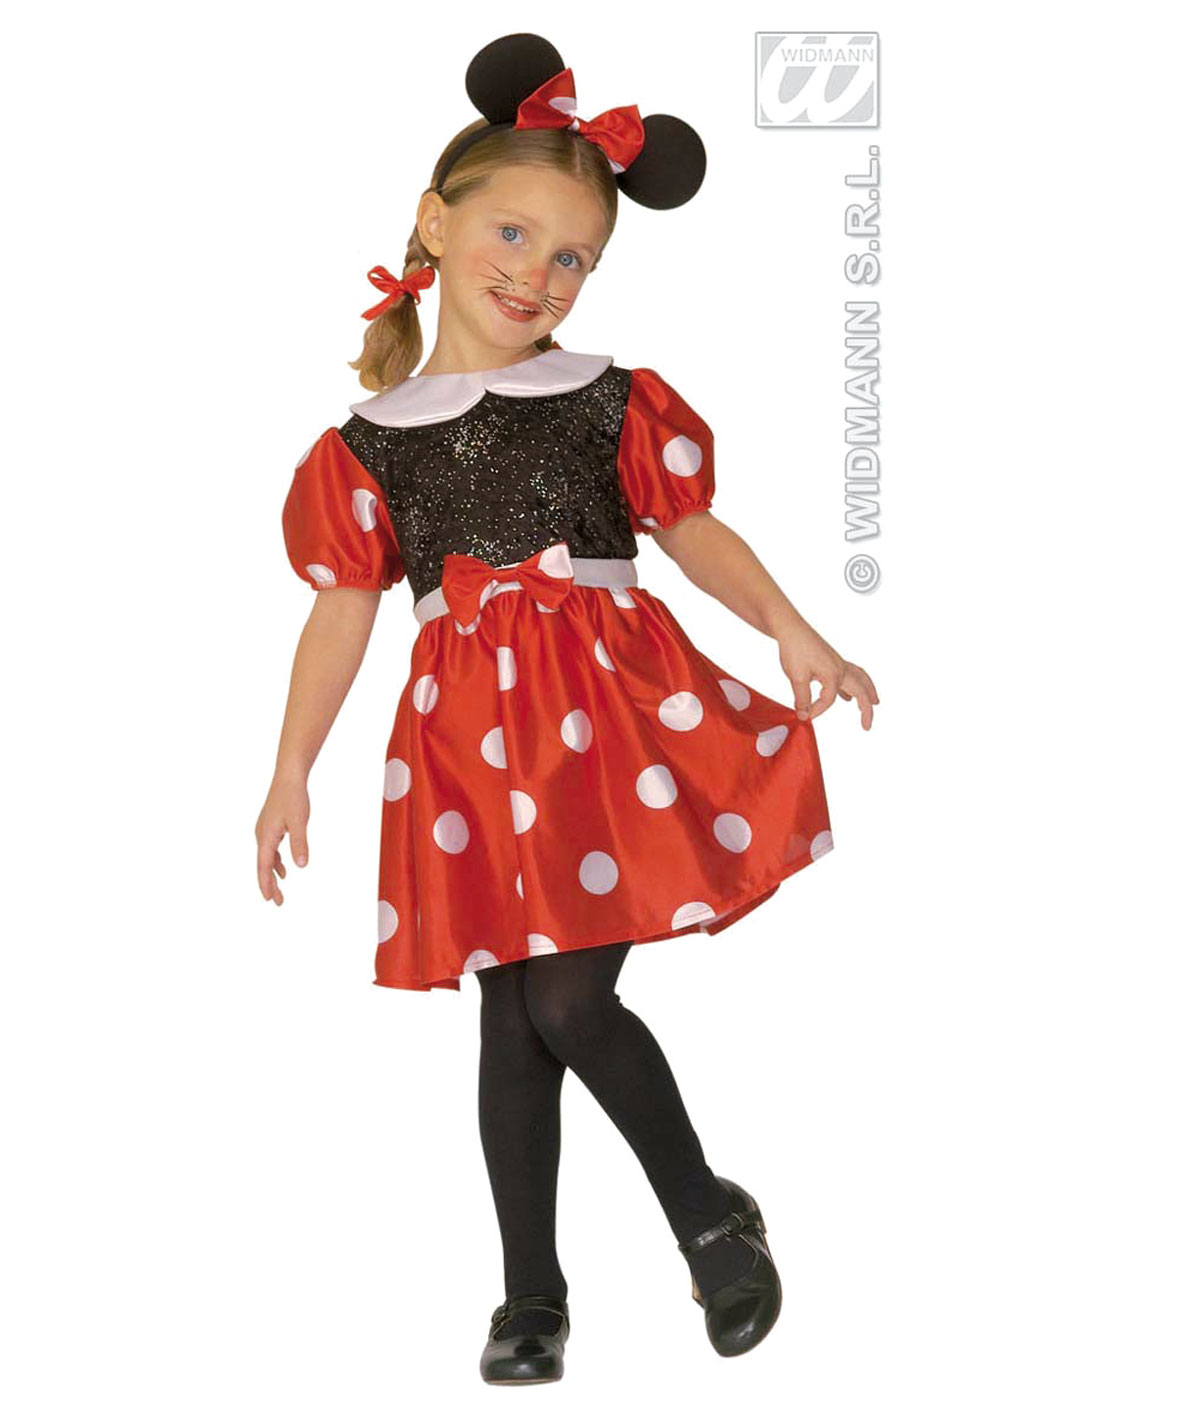 Disfraz Infantil Minnie mouse